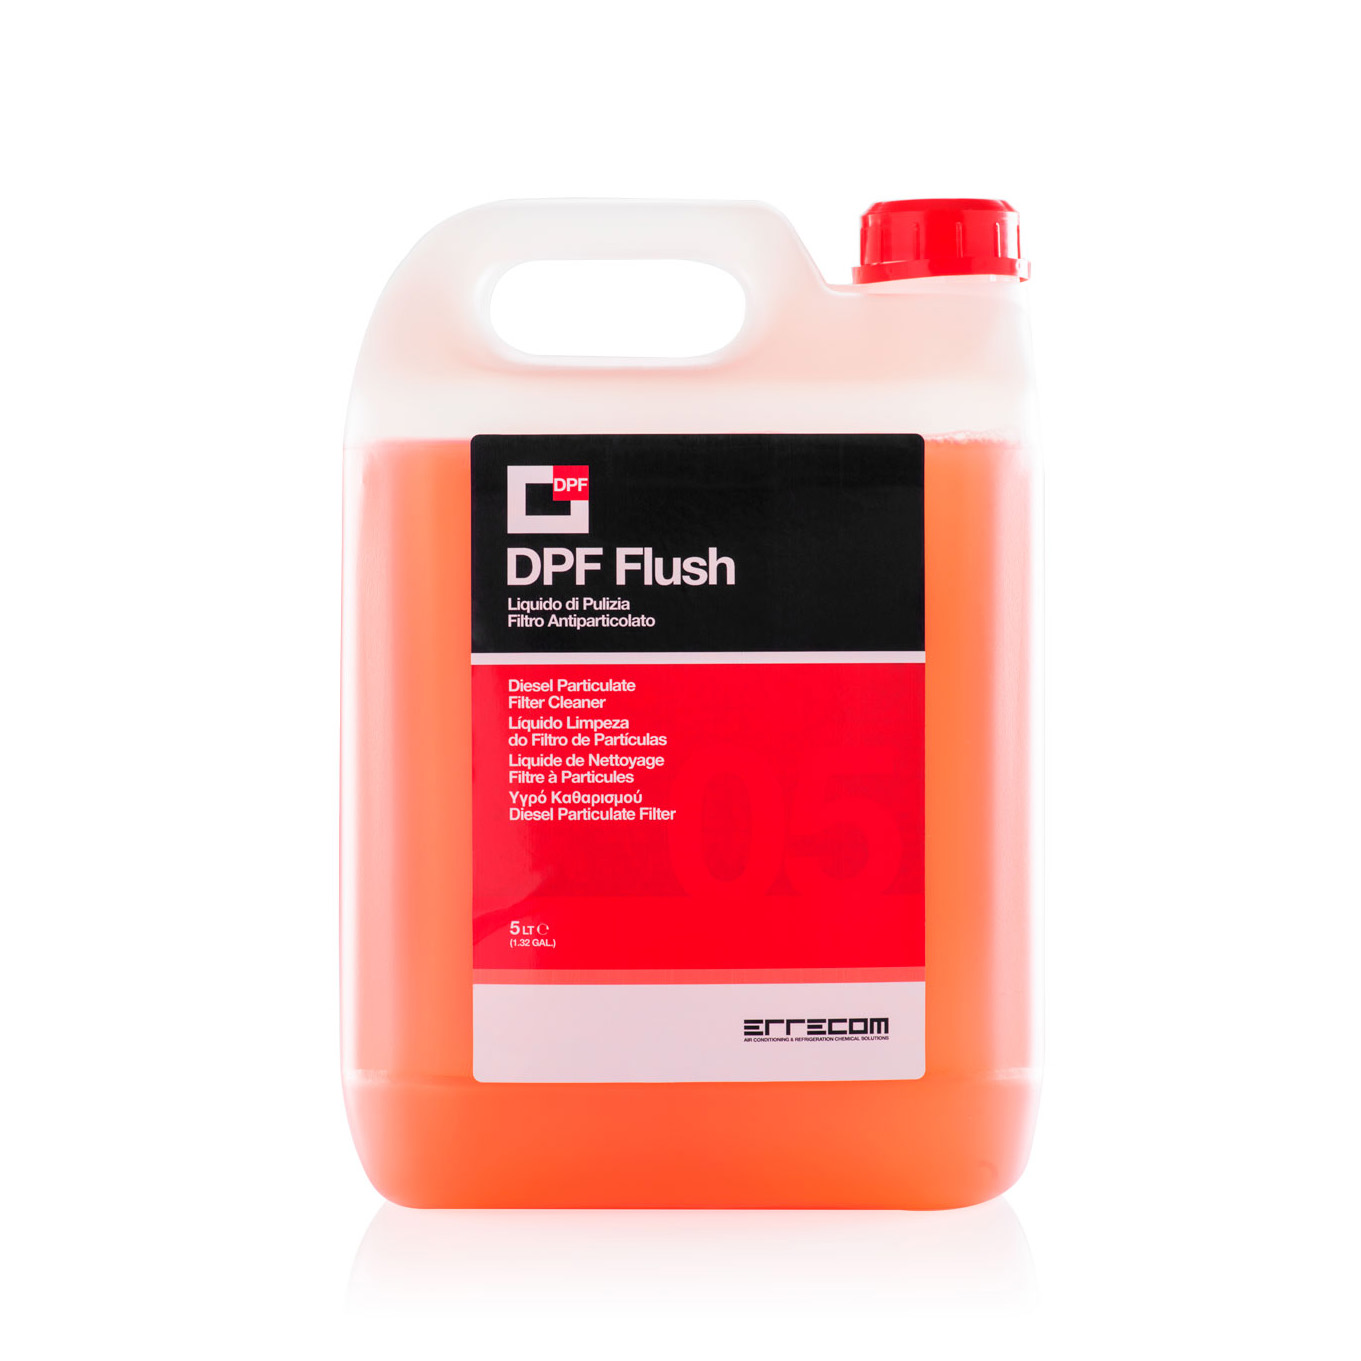 2 x DPF FLUSH Liquido per la Pulizia dei Filtri Antiparticolato Diesel - 5 litri - Confezione n° 2 pezzi